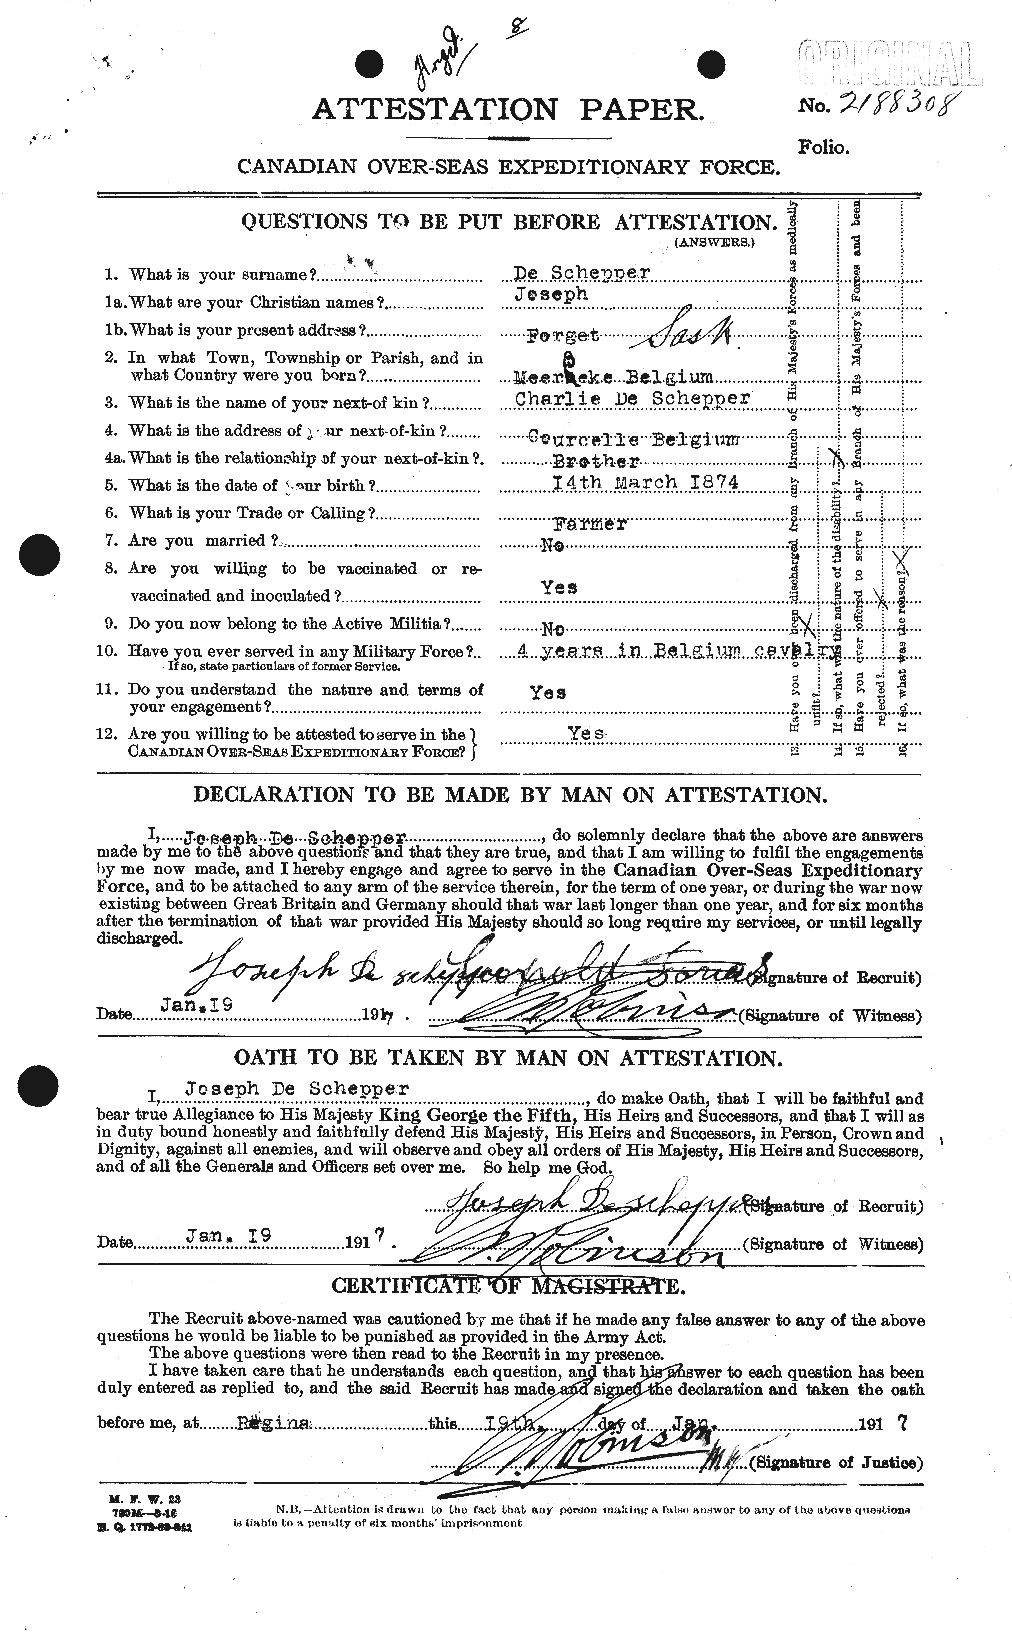 Dossiers du Personnel de la Première Guerre mondiale - CEC 290247a